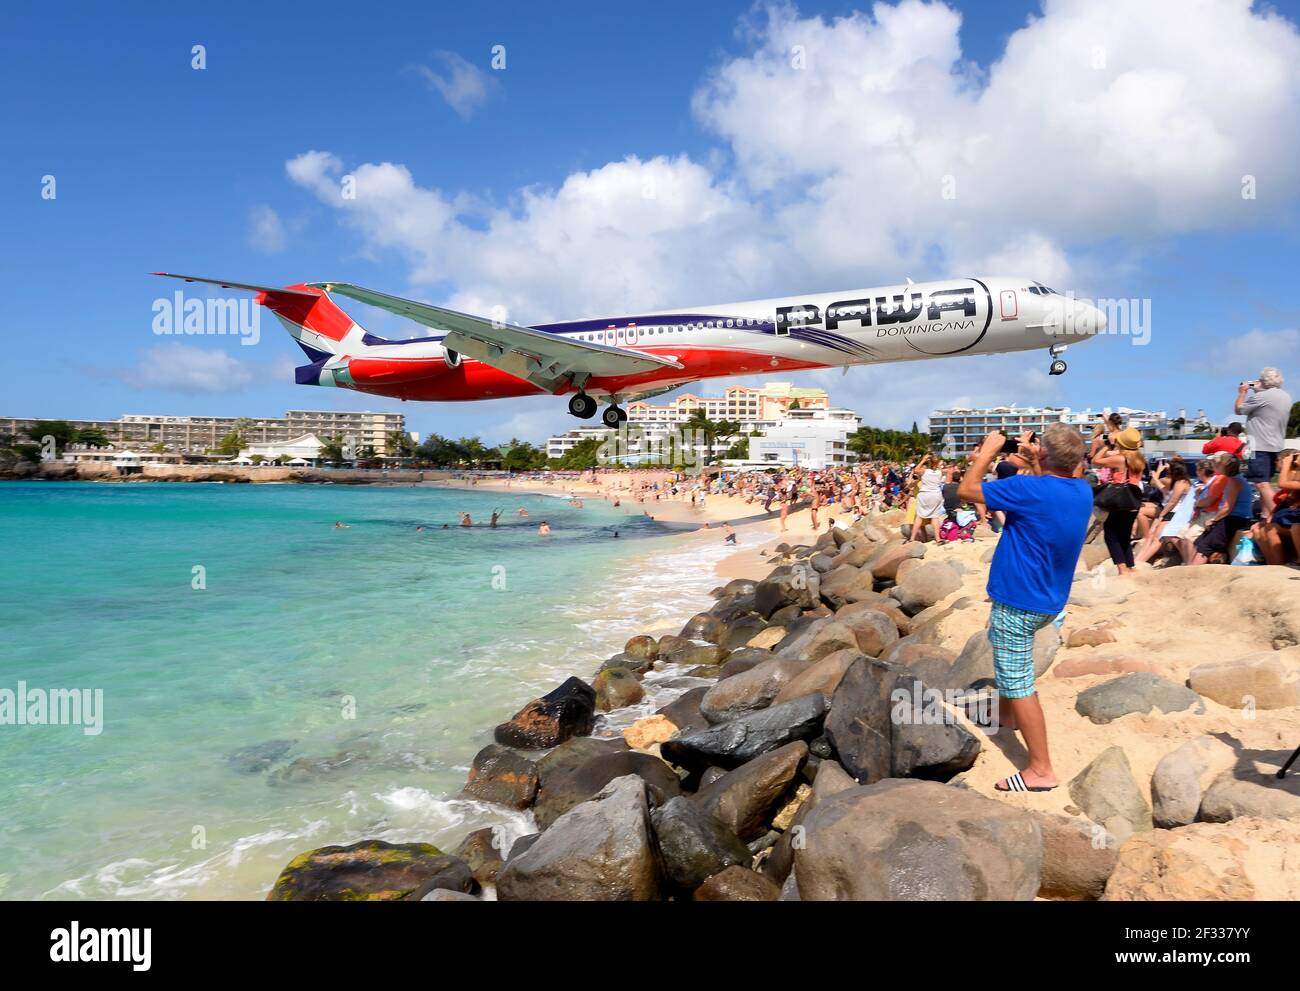 PAWA Dominicana MD-83 Flugzeug extrem niedriger Anflug über Maho Beach, St. Maarten. Touristenattraktion durch die nahe oben landenden Flugzeuge. Plane Spotting. Stockfoto